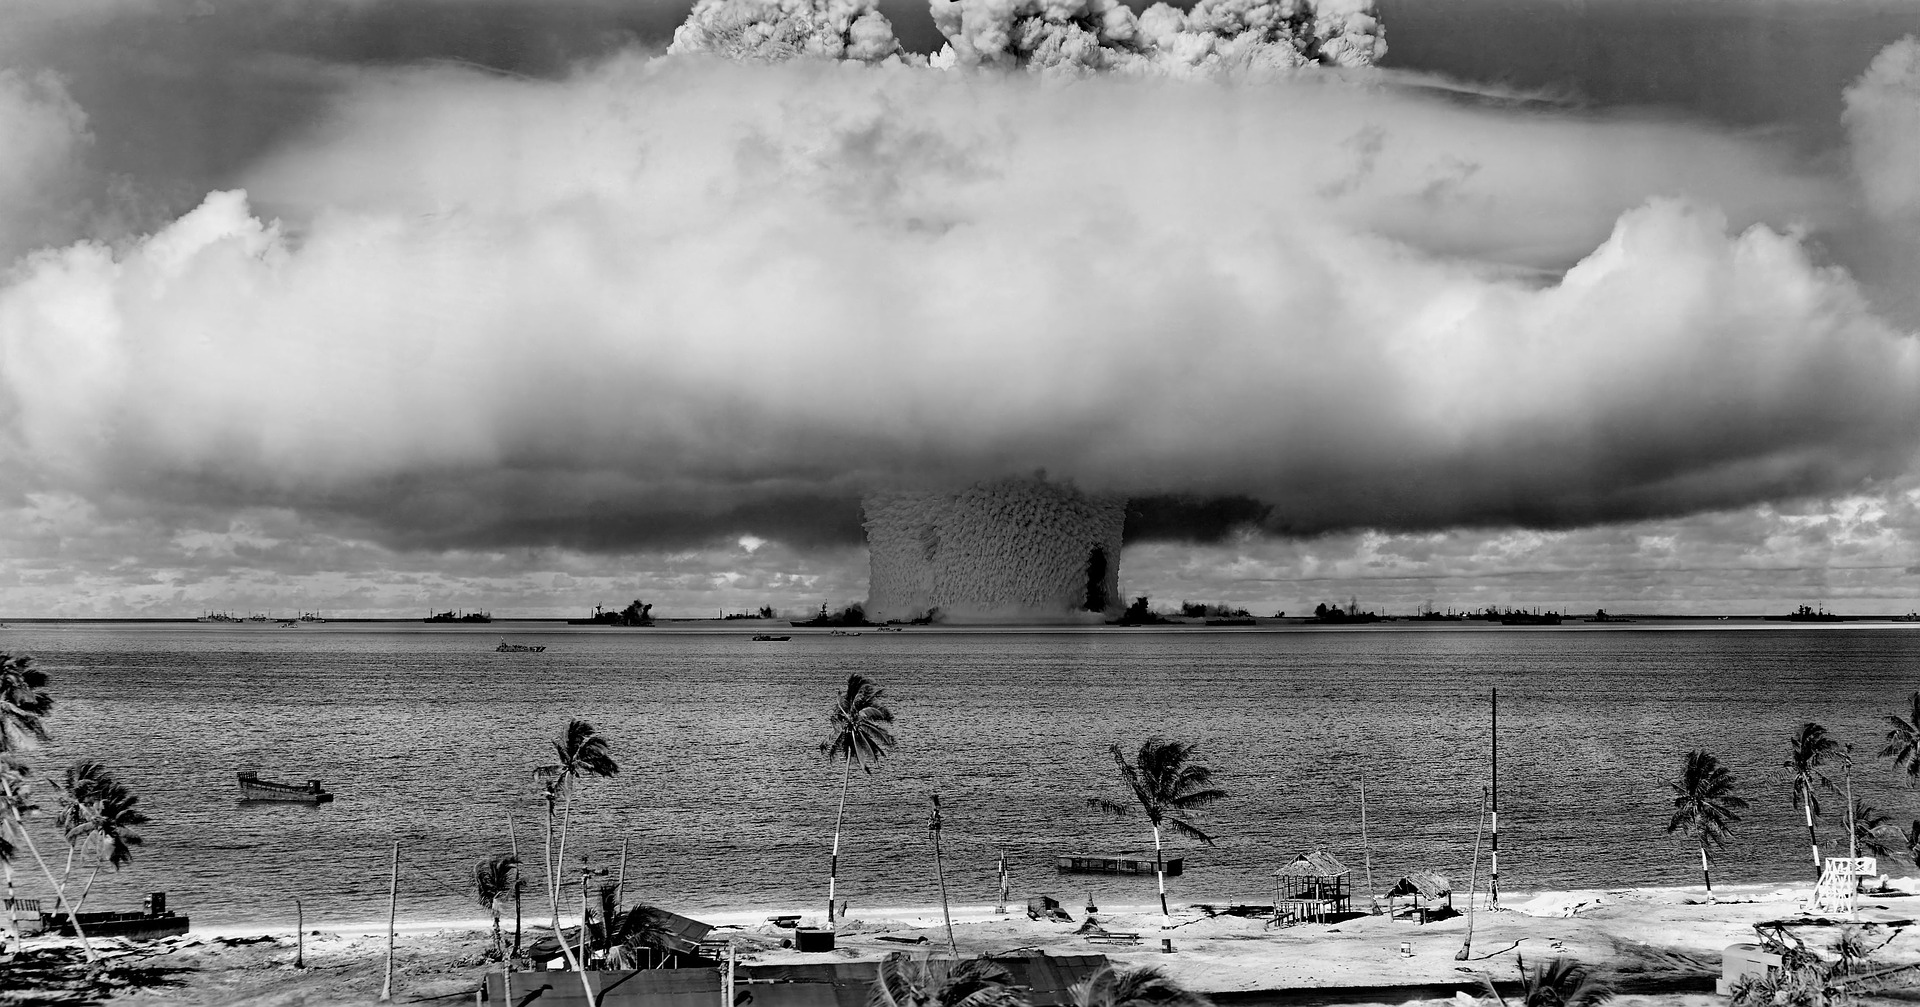 Surviving Nuclear Explosion Part 1